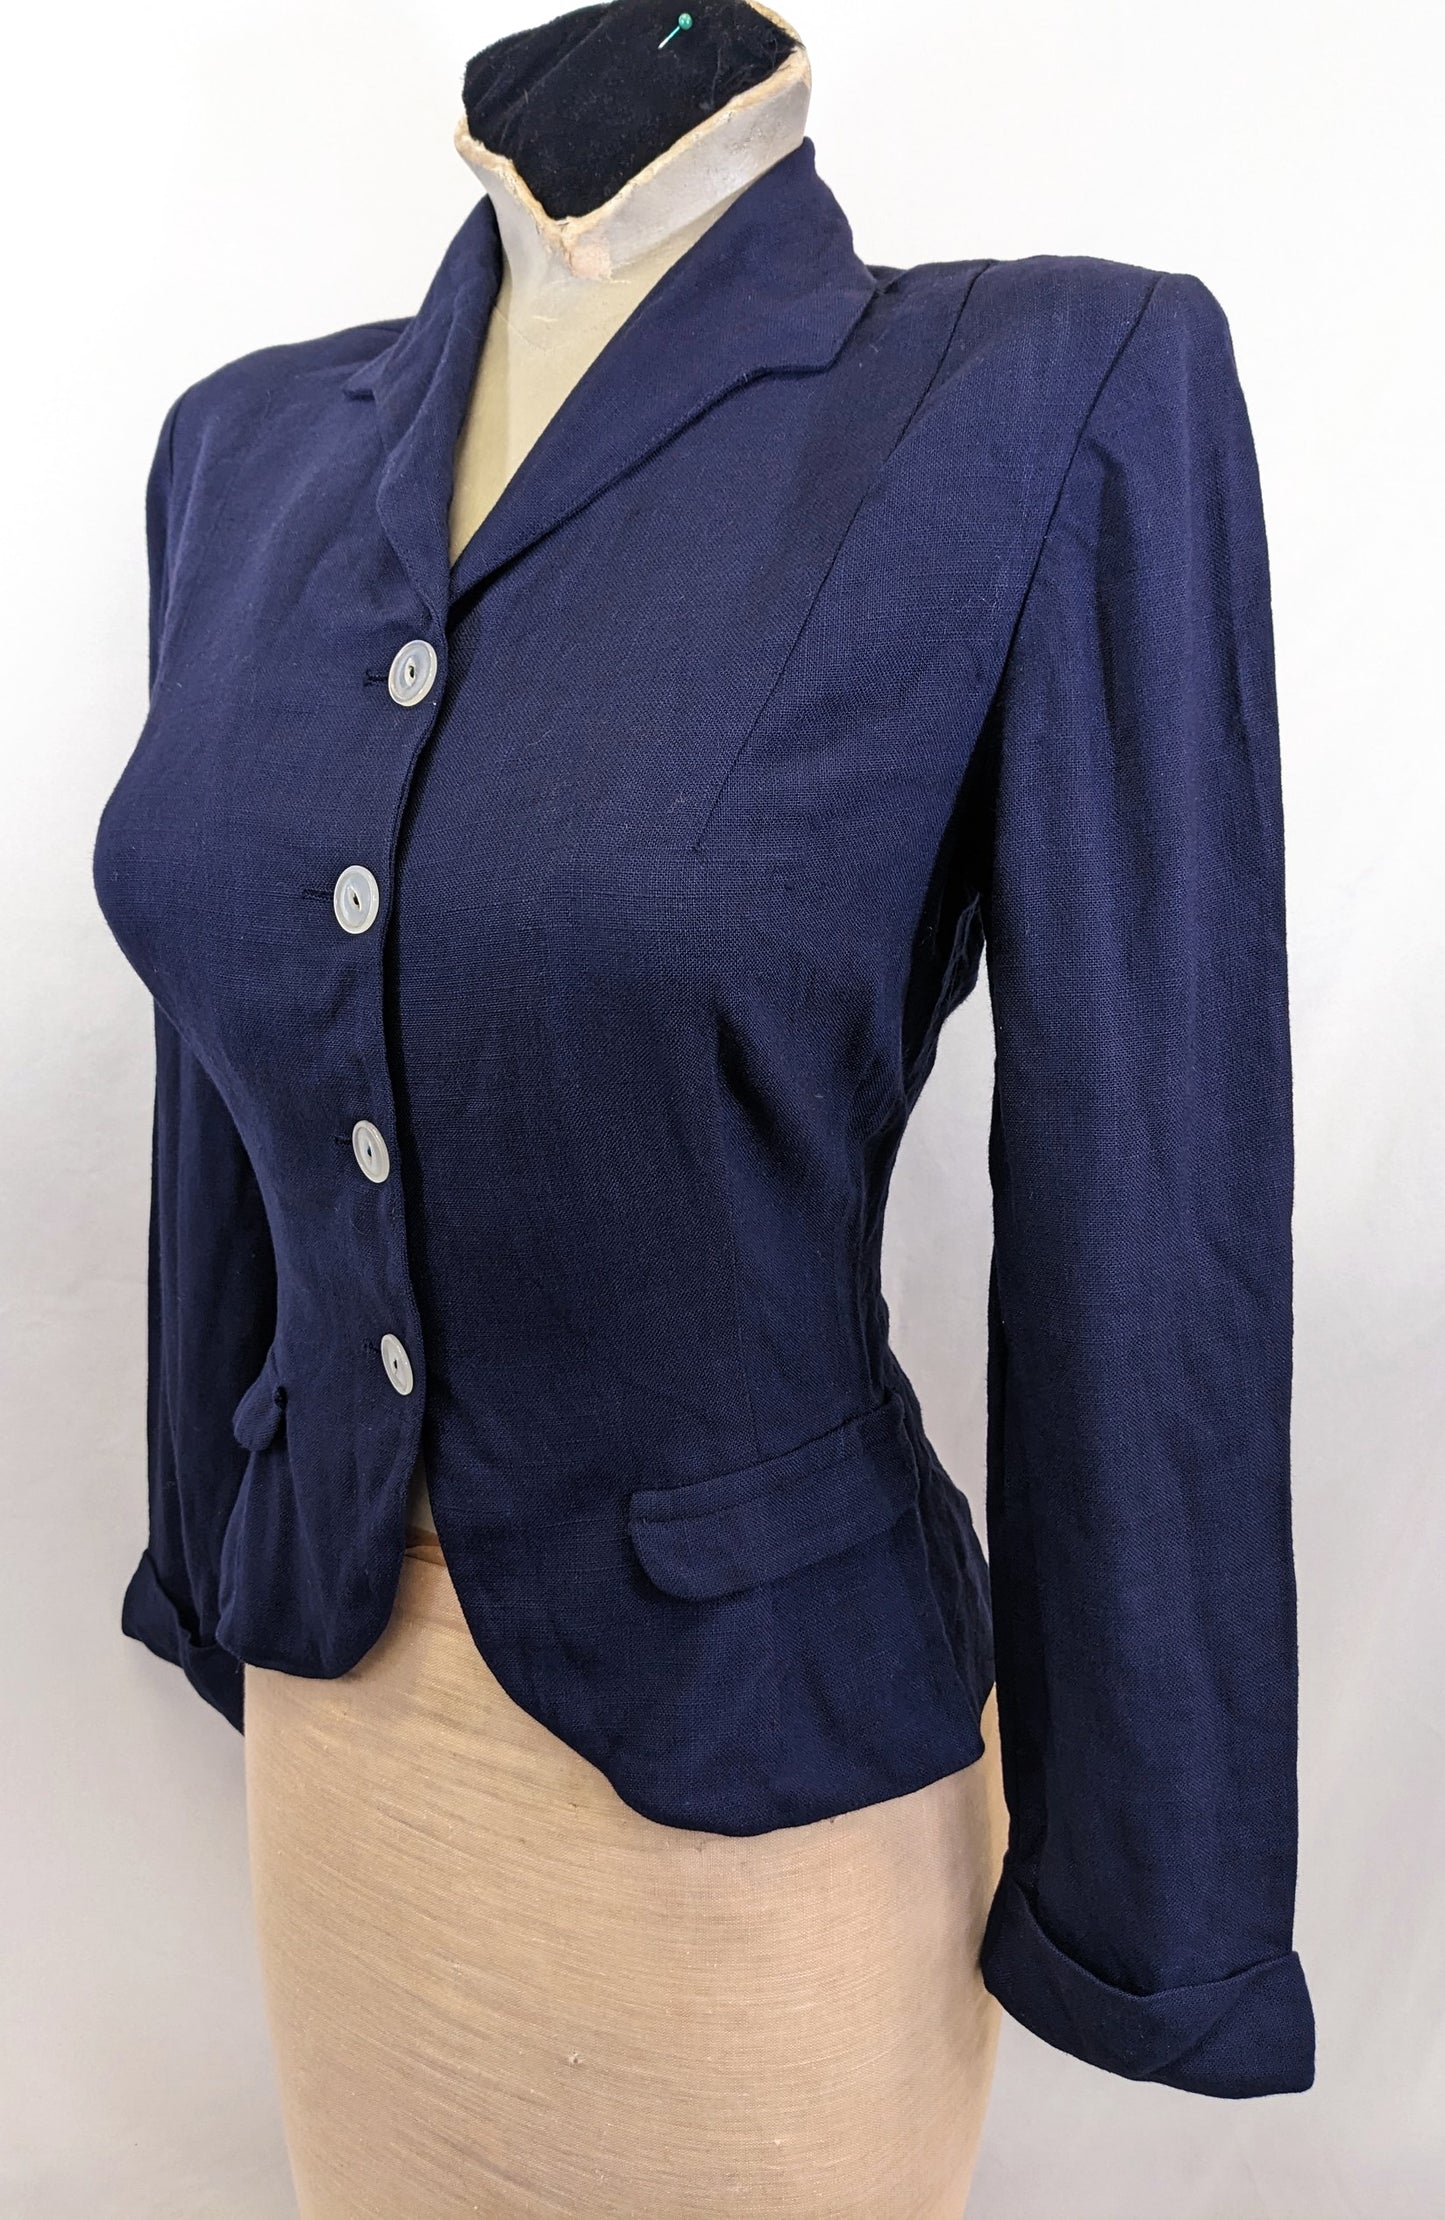 Late 1930s Linen/Cotton mix Jacket